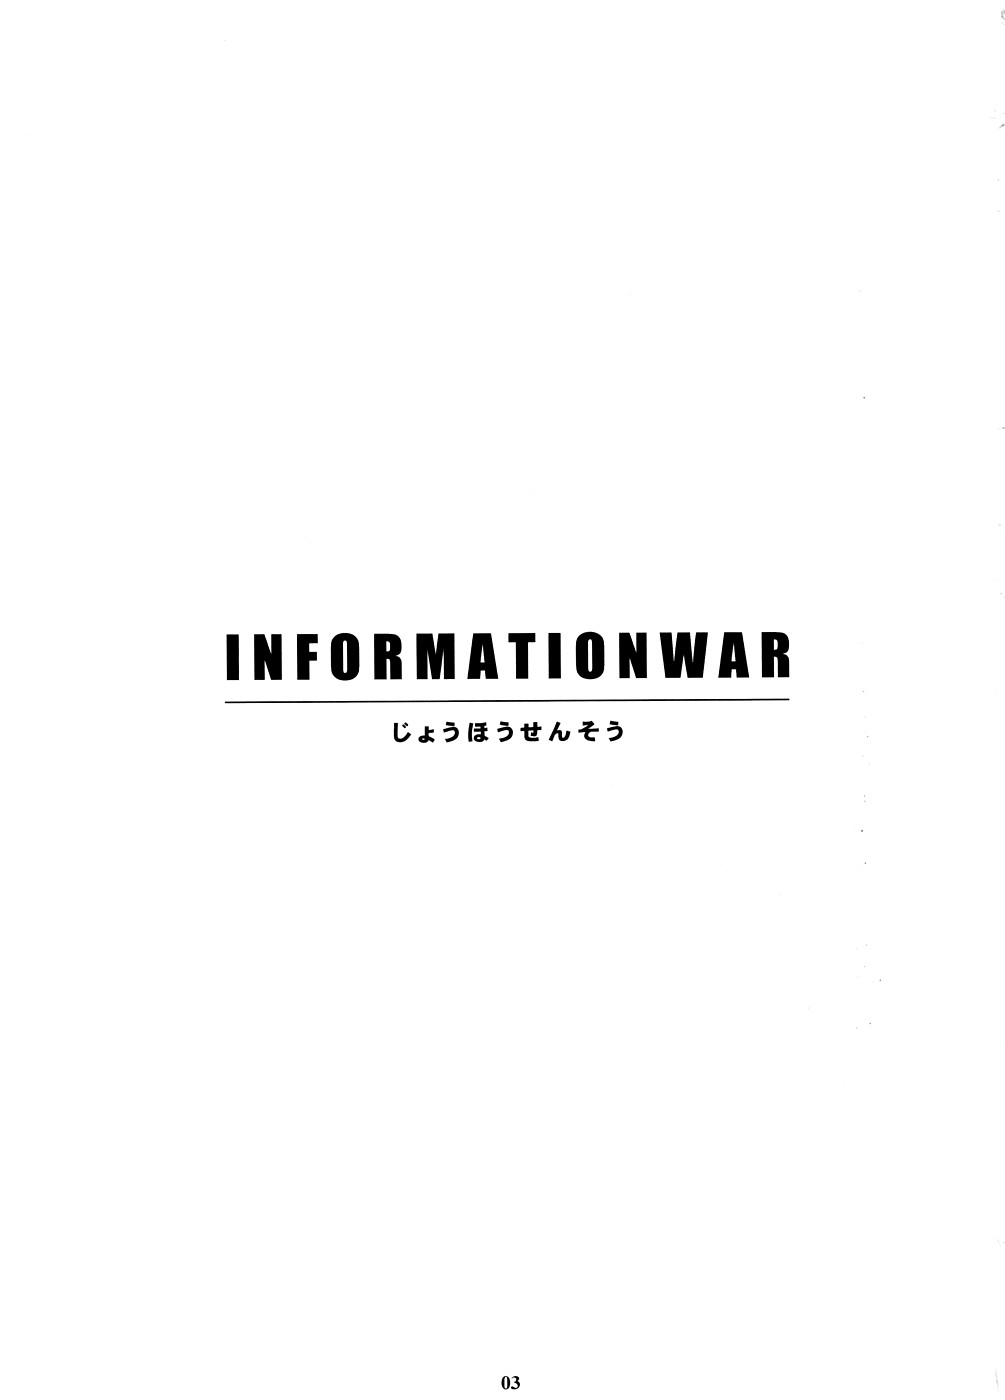 [Amano Ameno] INFORMATION WAR 